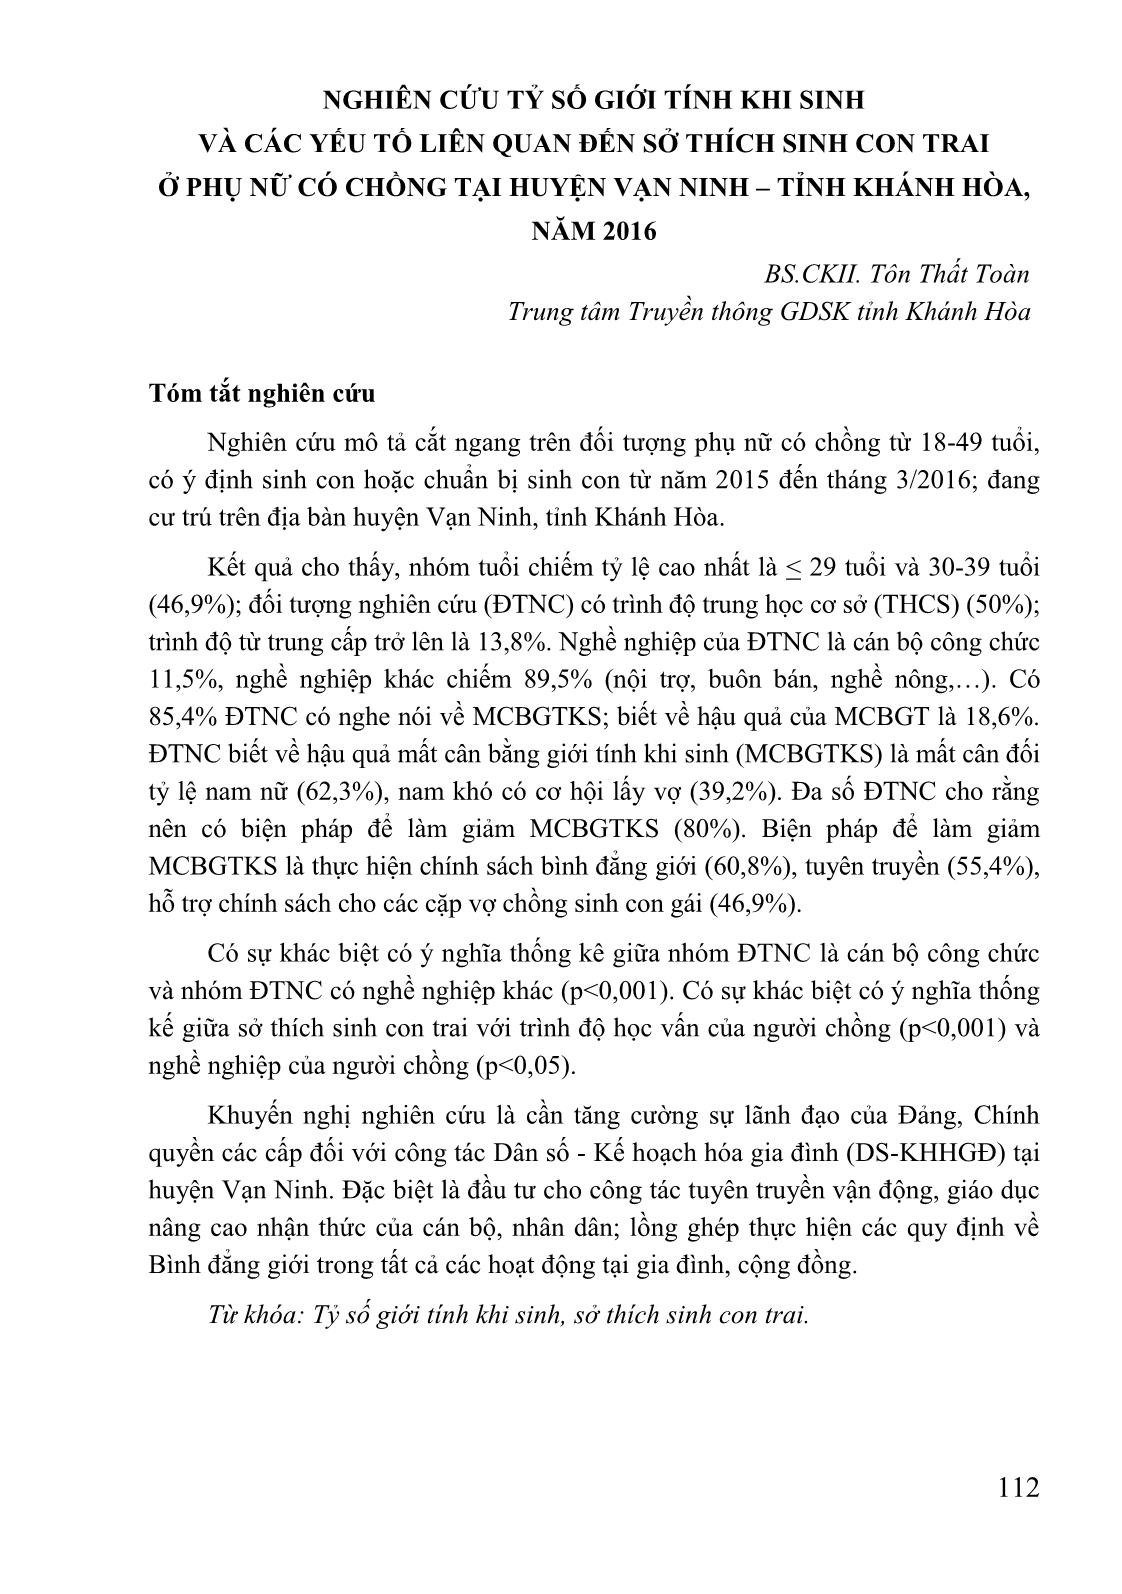 Nghiên cứu tỷ số giới tính khi sinh và các yếu tố liên quan đến sở thích sinh con trai ở phụ nữ có chồng tại huyện Vạn Ninh - tỉnh Khánh Hòa, năm 2016 trang 1